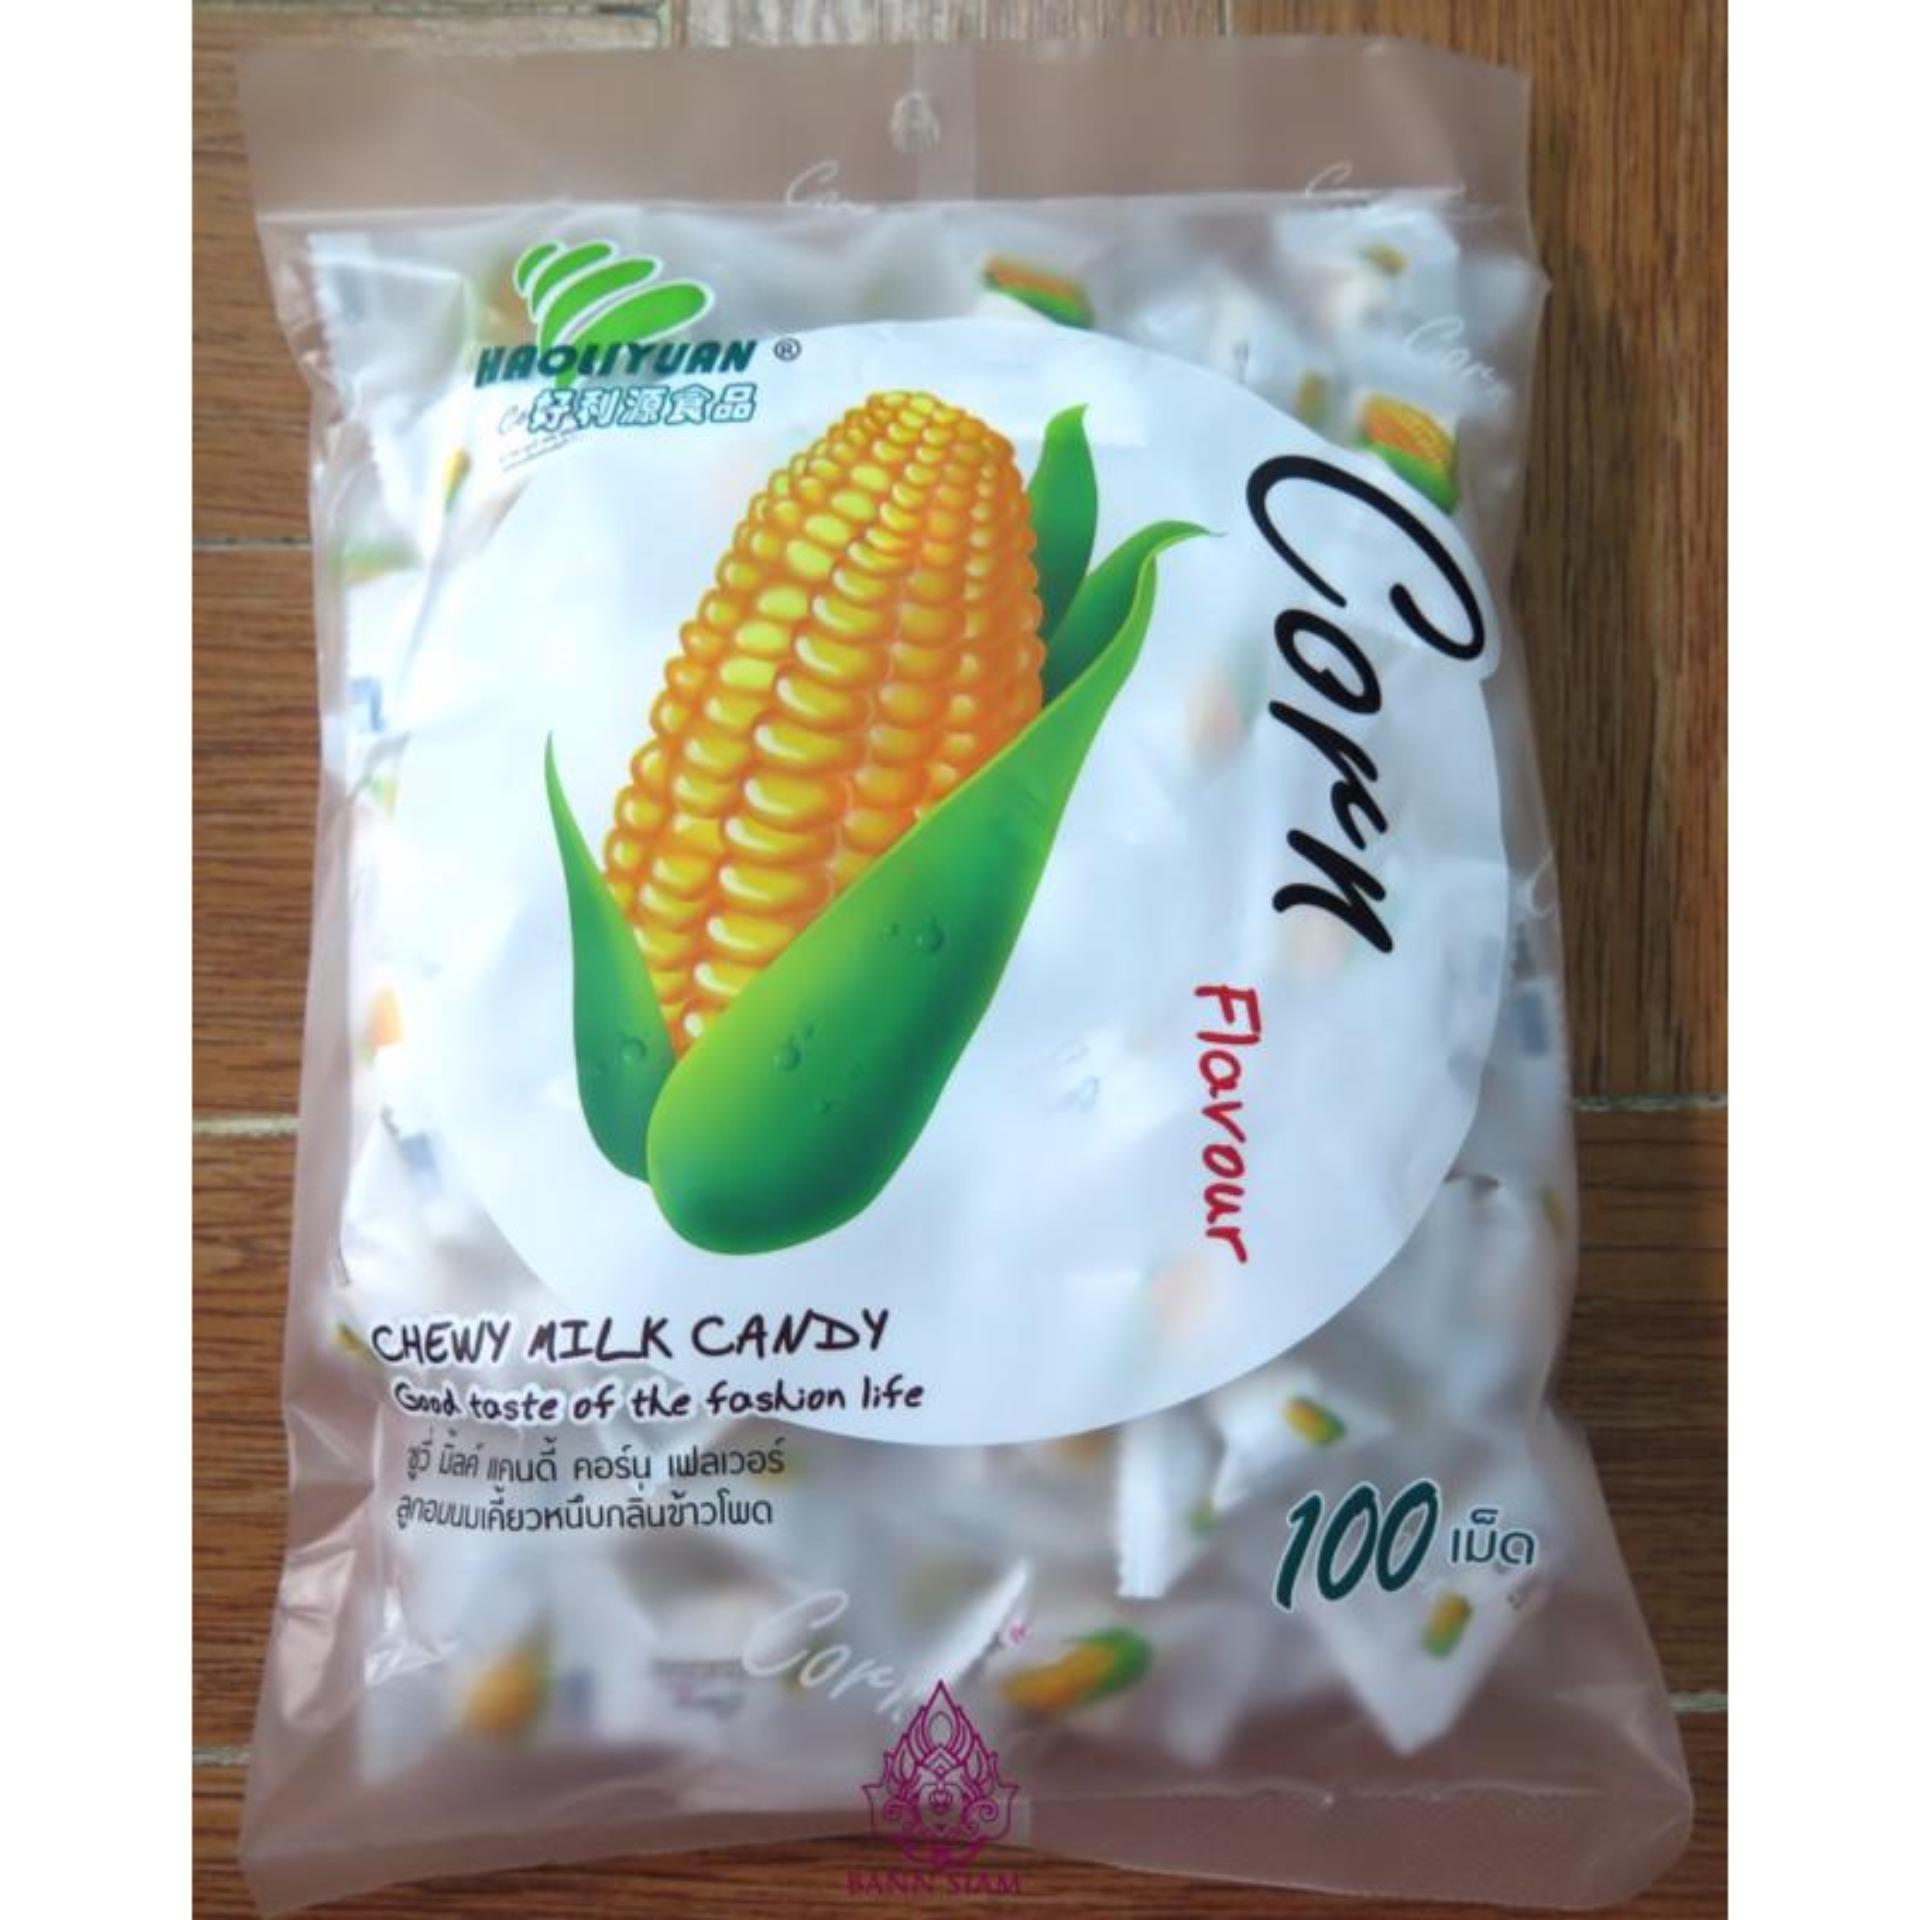 Bán 2 Bịch Kẹo Sữa Mềm Thái Lan Prairie My Chewy Milk Candy Corn Vị Bắp 200  Viên | Báo Giá Rẻ 110.000₫